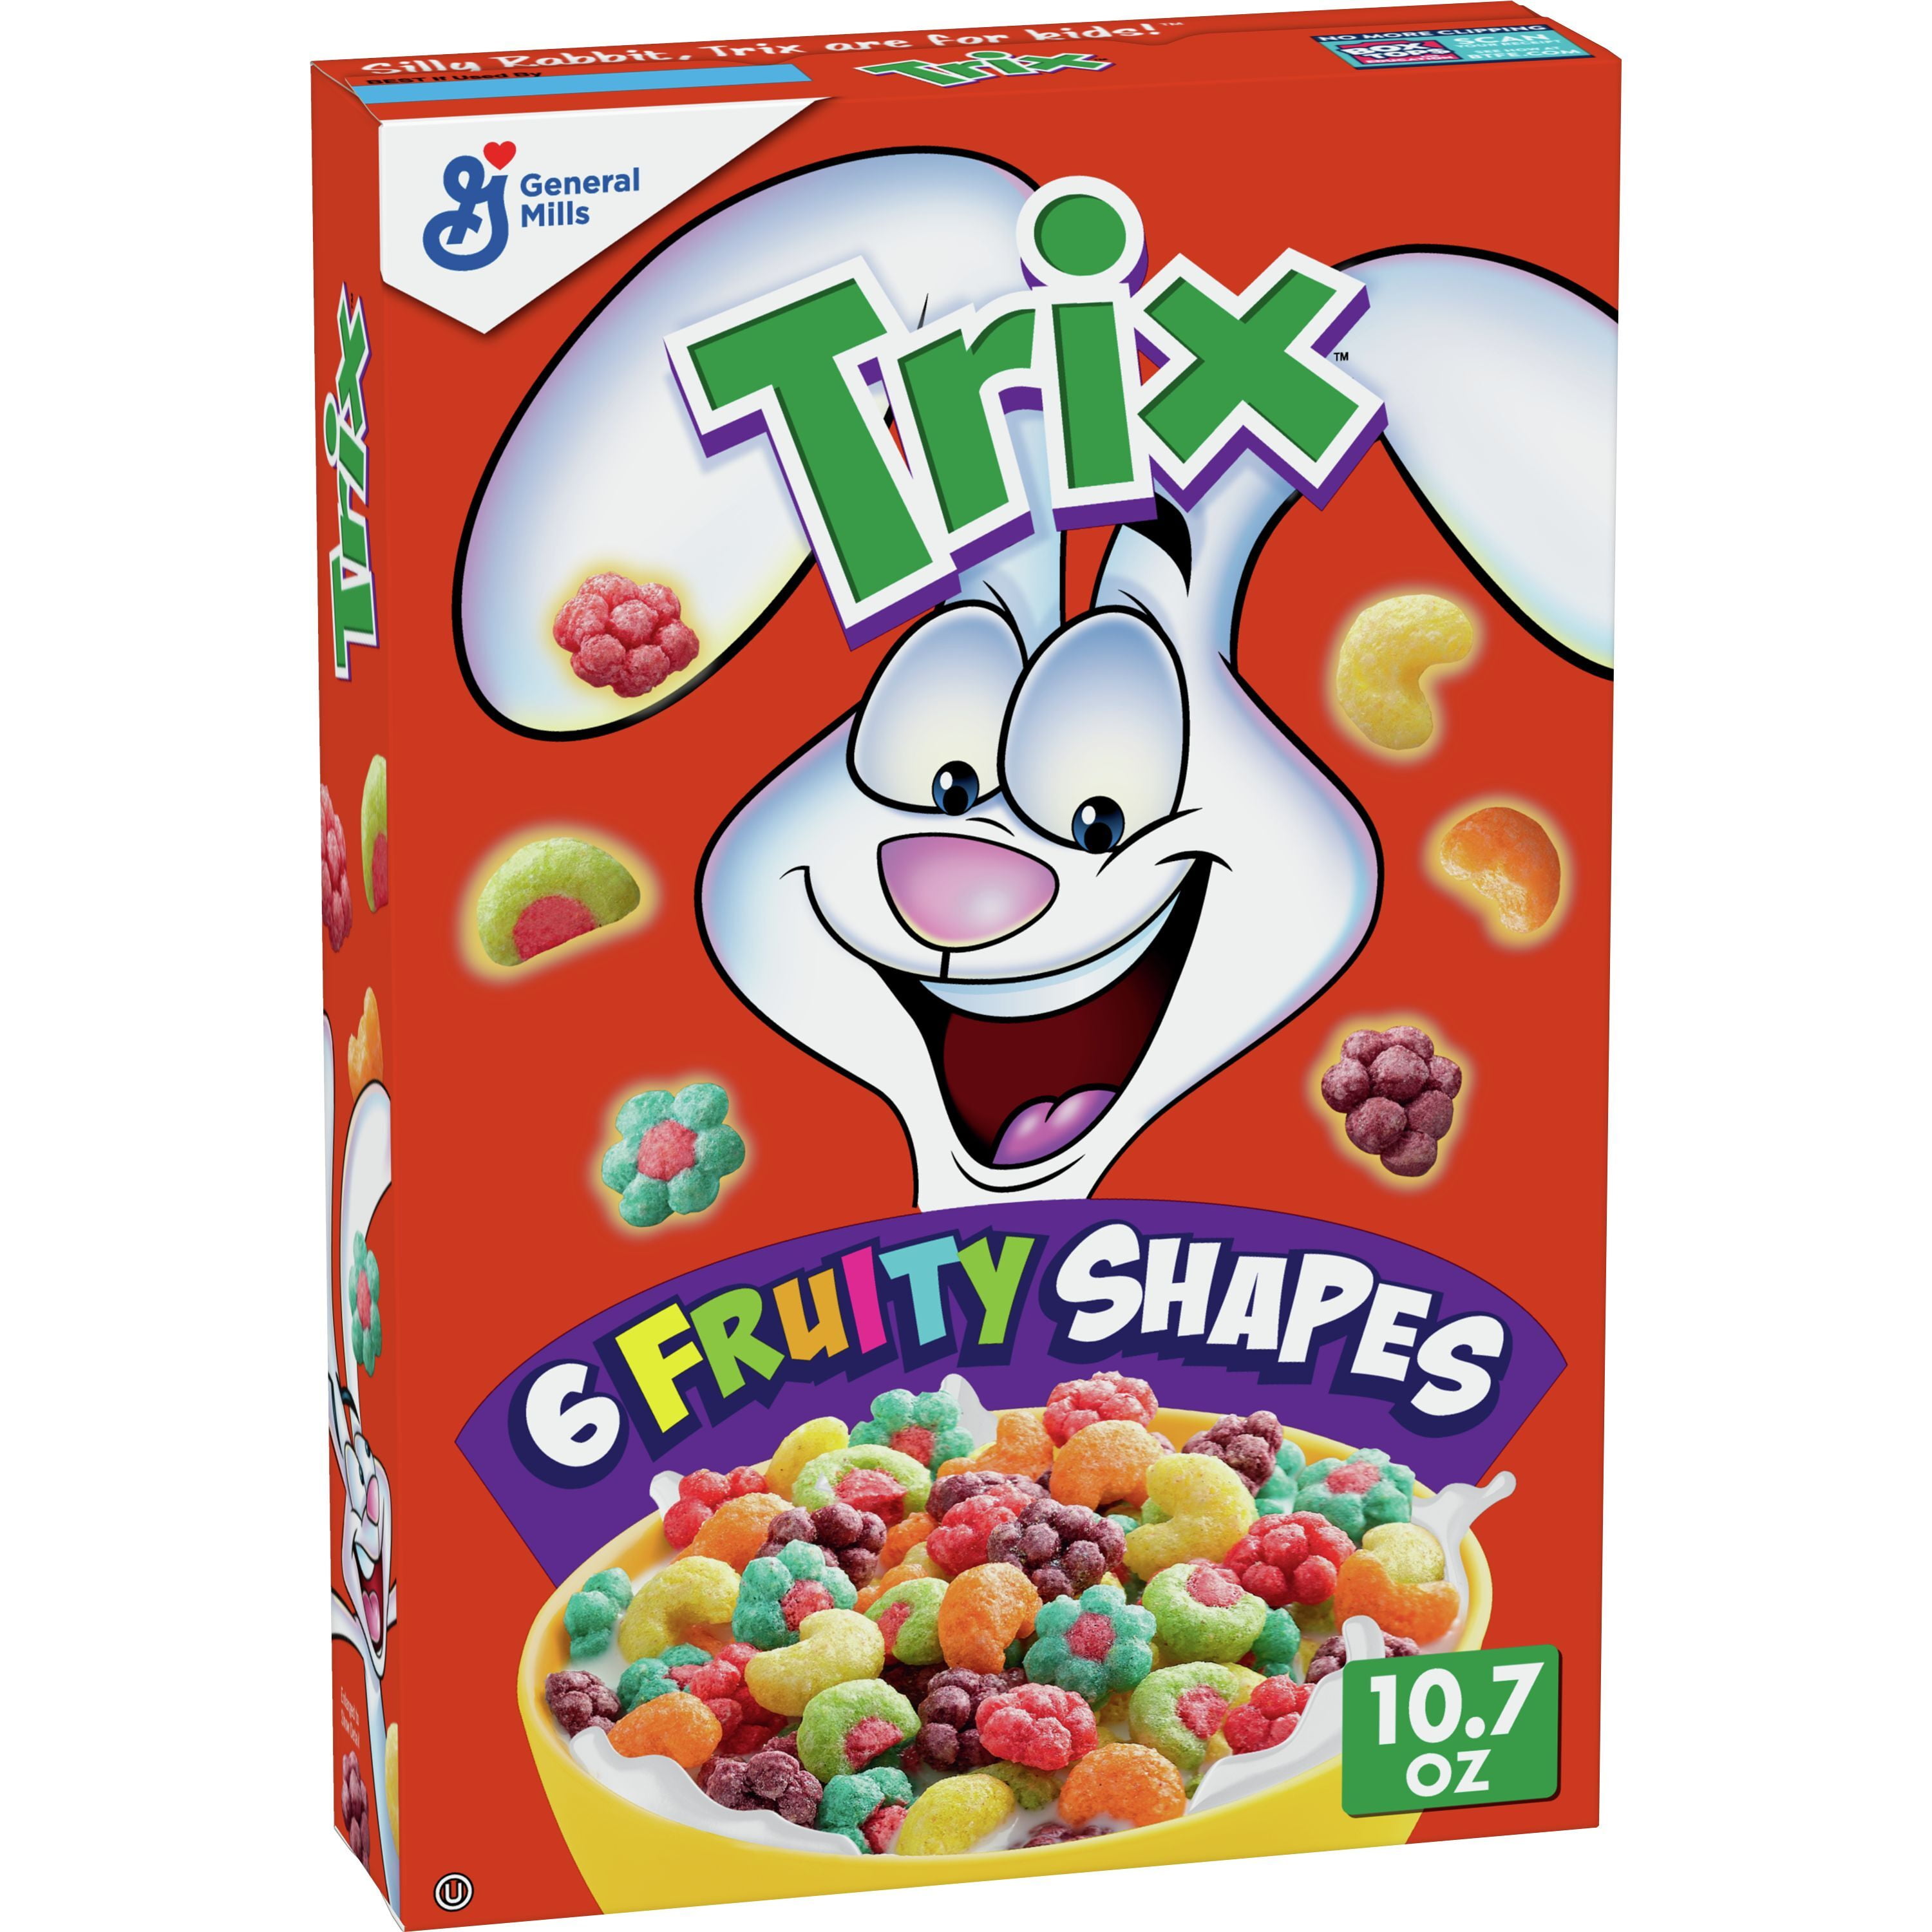 Trix Fruity Breakfast Cereal, 6 Fruity Shapes, Whole Grain, 10.7 OZ 